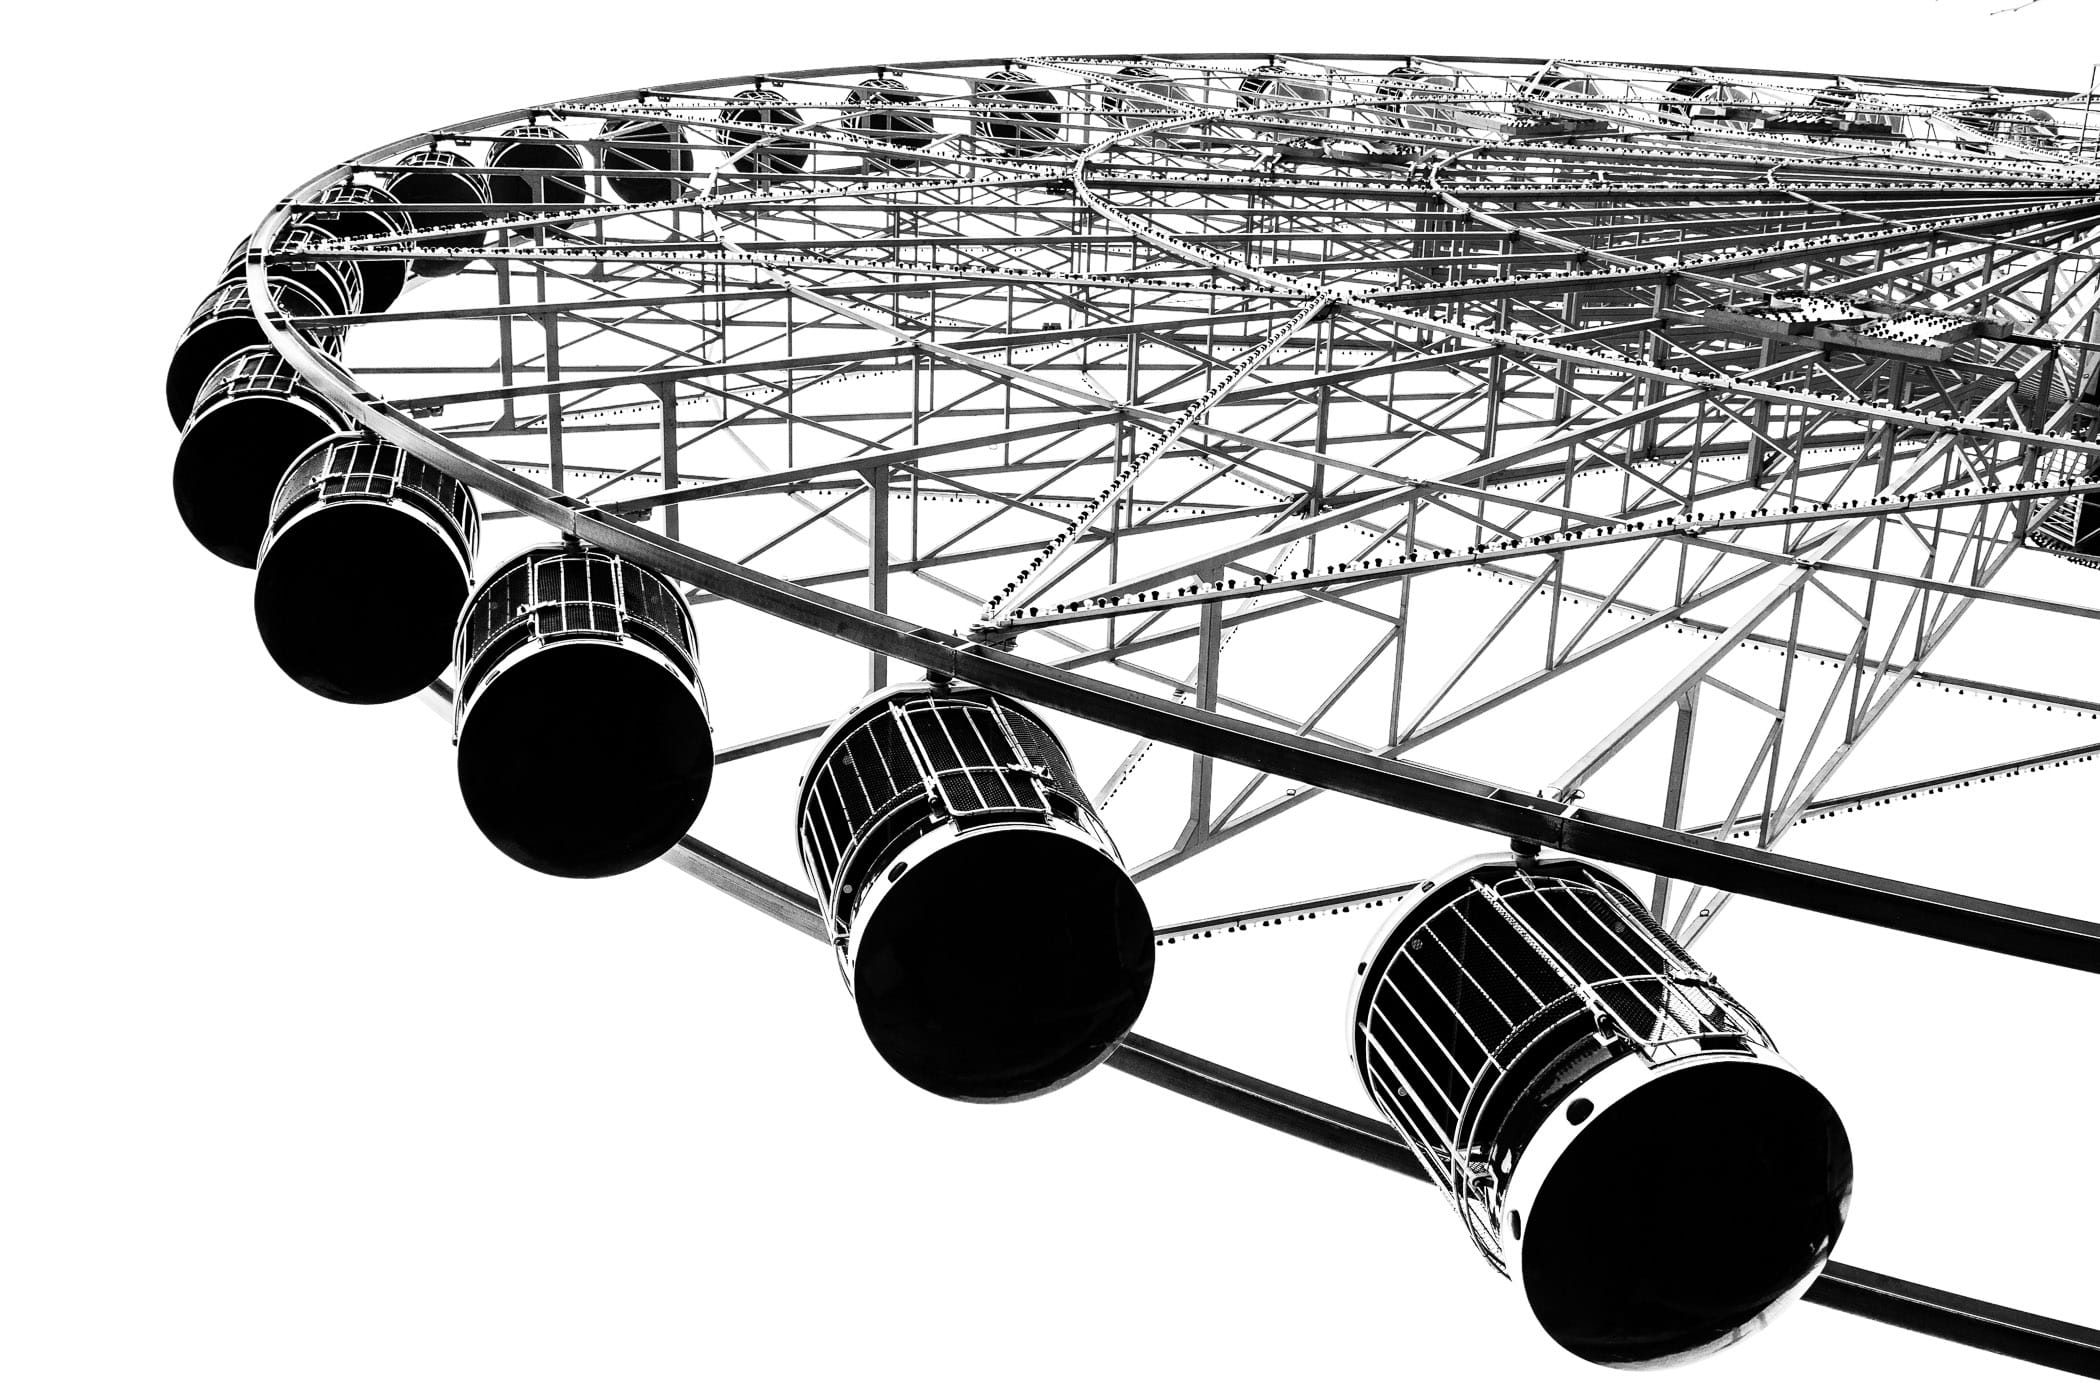 Gondolas hang from the Texas Star Ferris Wheel at Dallas’ Fair Park.